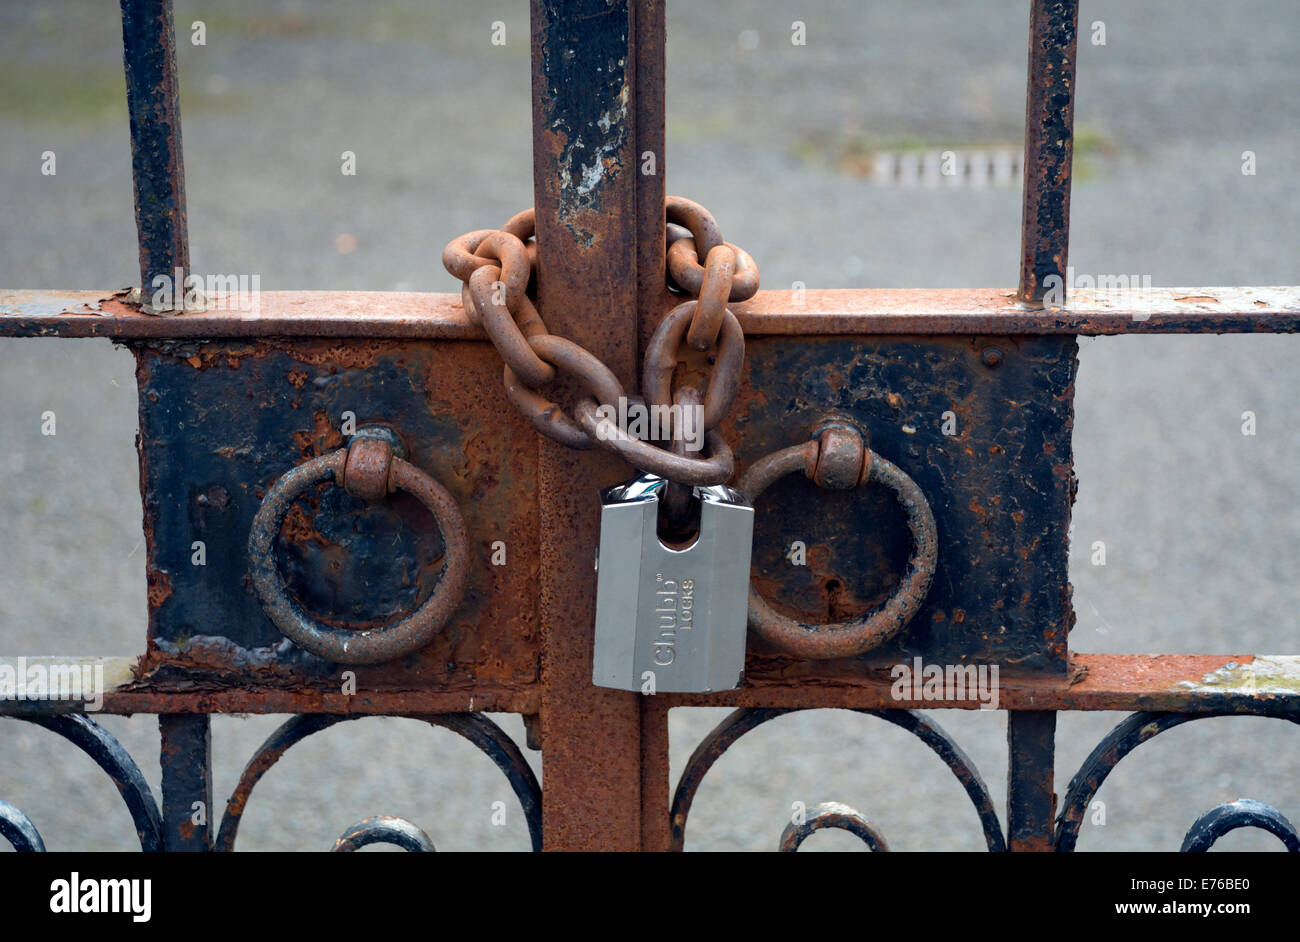 Puertas ornamentadas asegurado por un nuevo candado en una cadena oxidada. Foto de stock